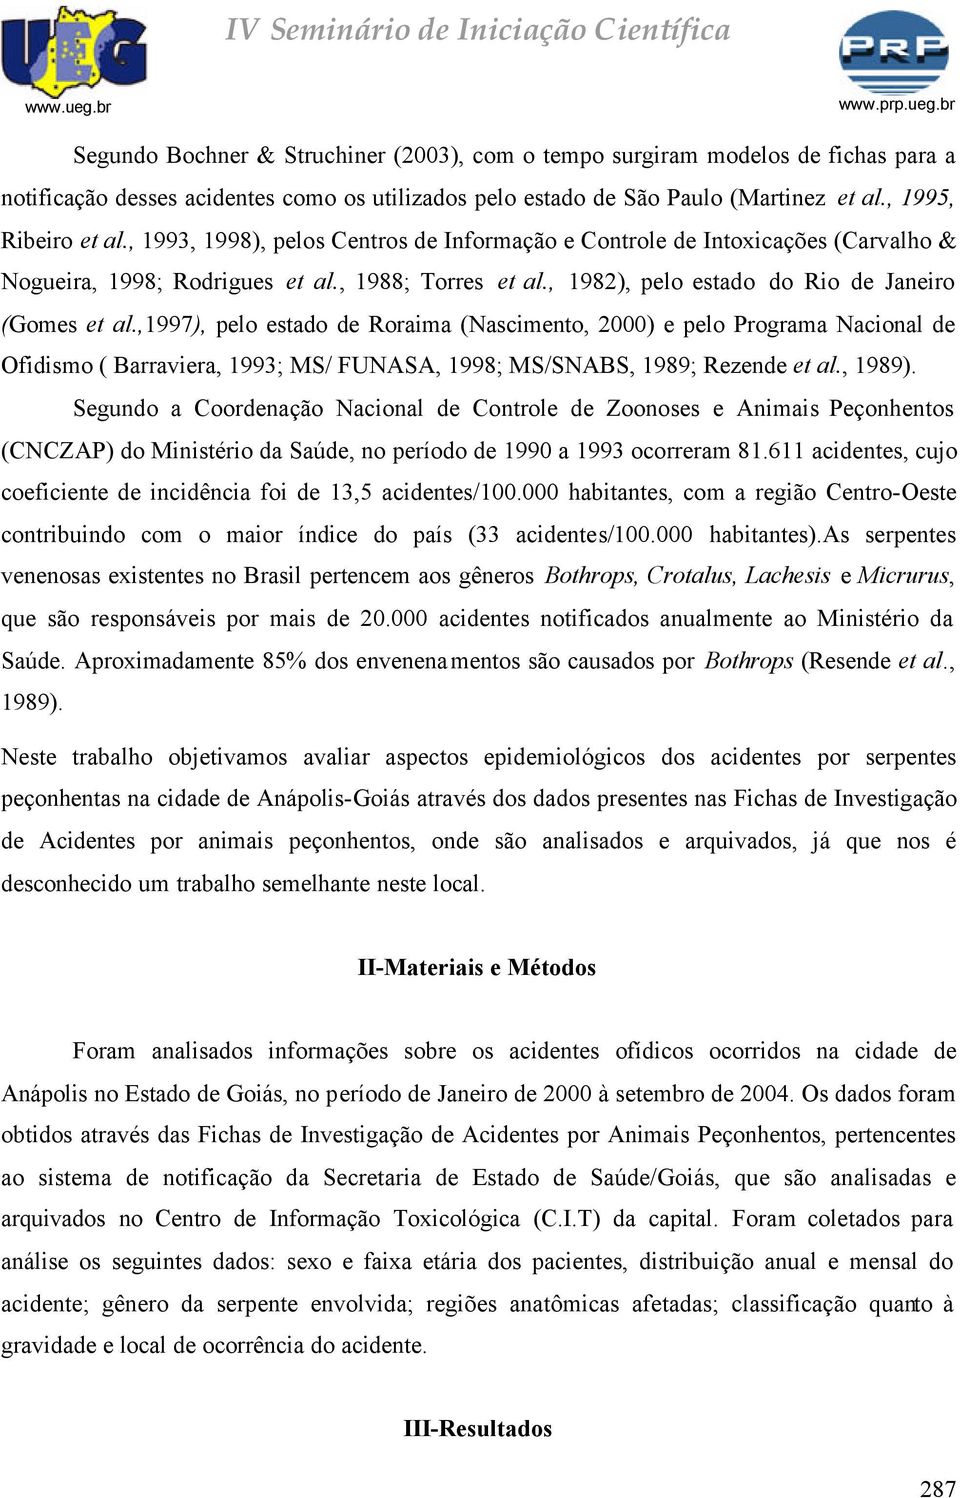 ,997), pelo estado de Roraima (Nascimento, 2) e pelo Programa Nacional de Ofidismo ( Barraviera, 993; MS/ FUNASA, 998; MS/SNABS, 989; Rezende et al., 989).